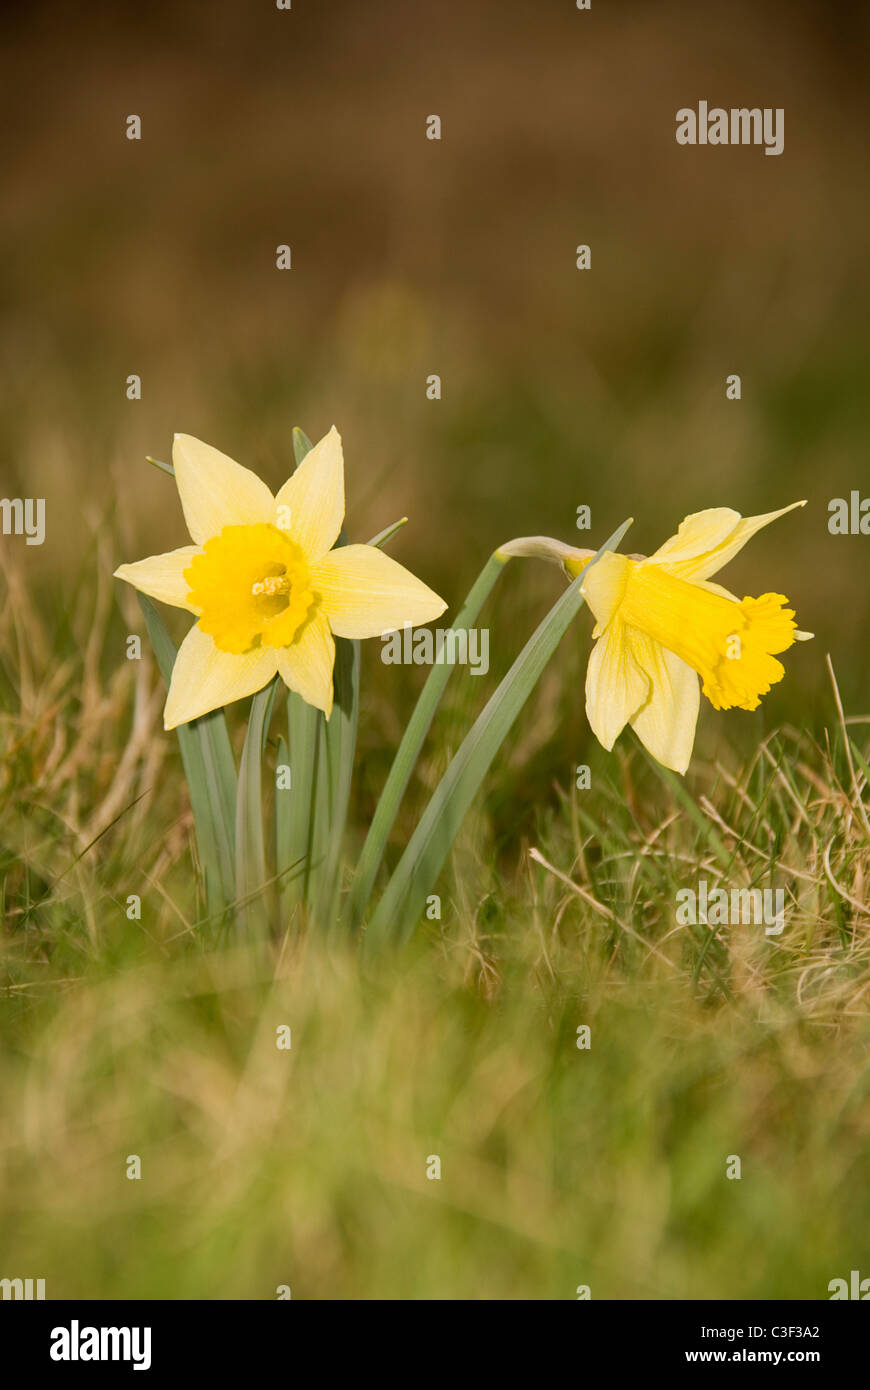 La jonquille (Narcissus pseudonarcissus sauvages) aussi connu comme un carême Lilly croissant sur une réserve naturelle dans la campagne Herefordshire Banque D'Images